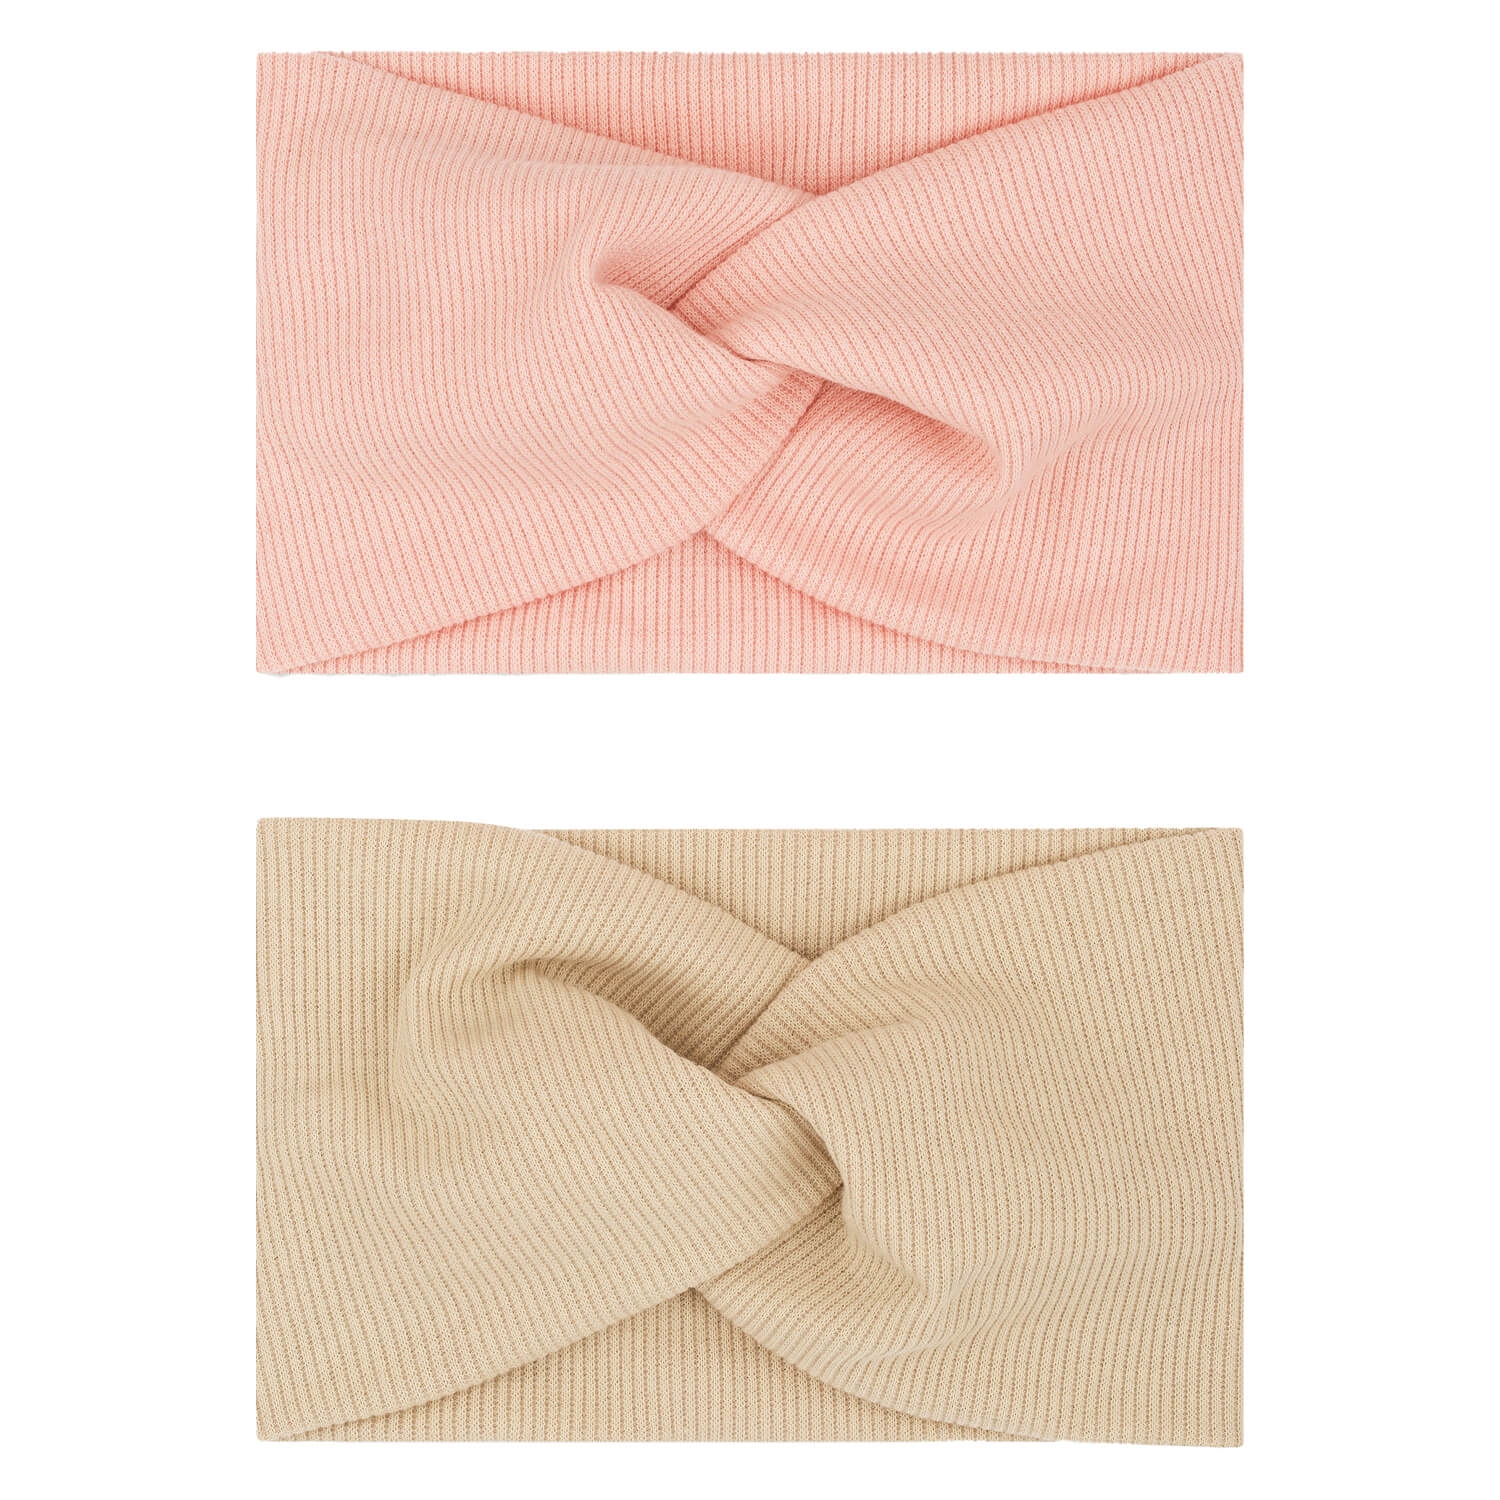 Produktbild von Haarband mit Knoten, beige & rosa